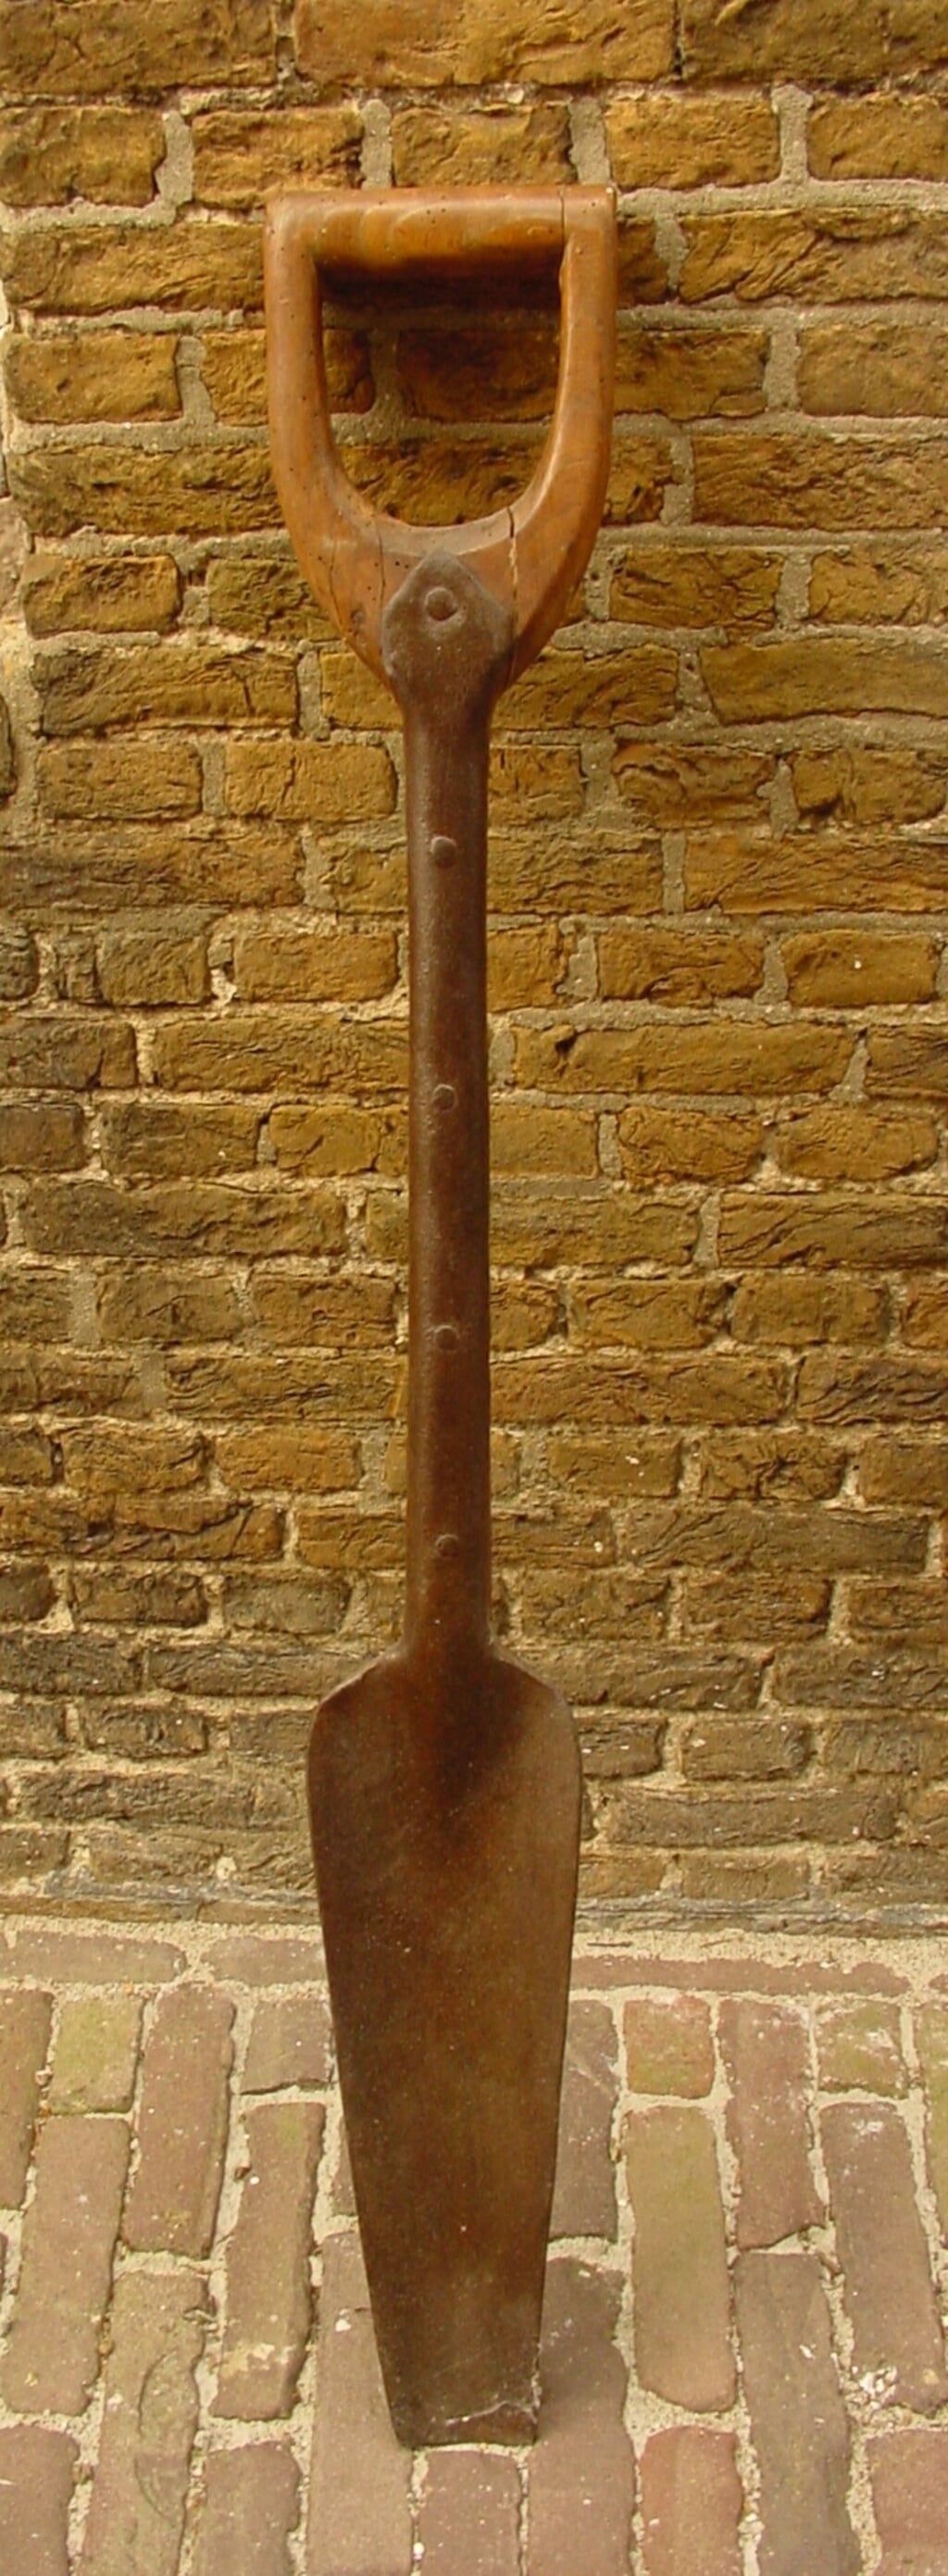 Een spade voor het delven van meekrap (Foto: Streekarchief Goeree-Overflakkee).